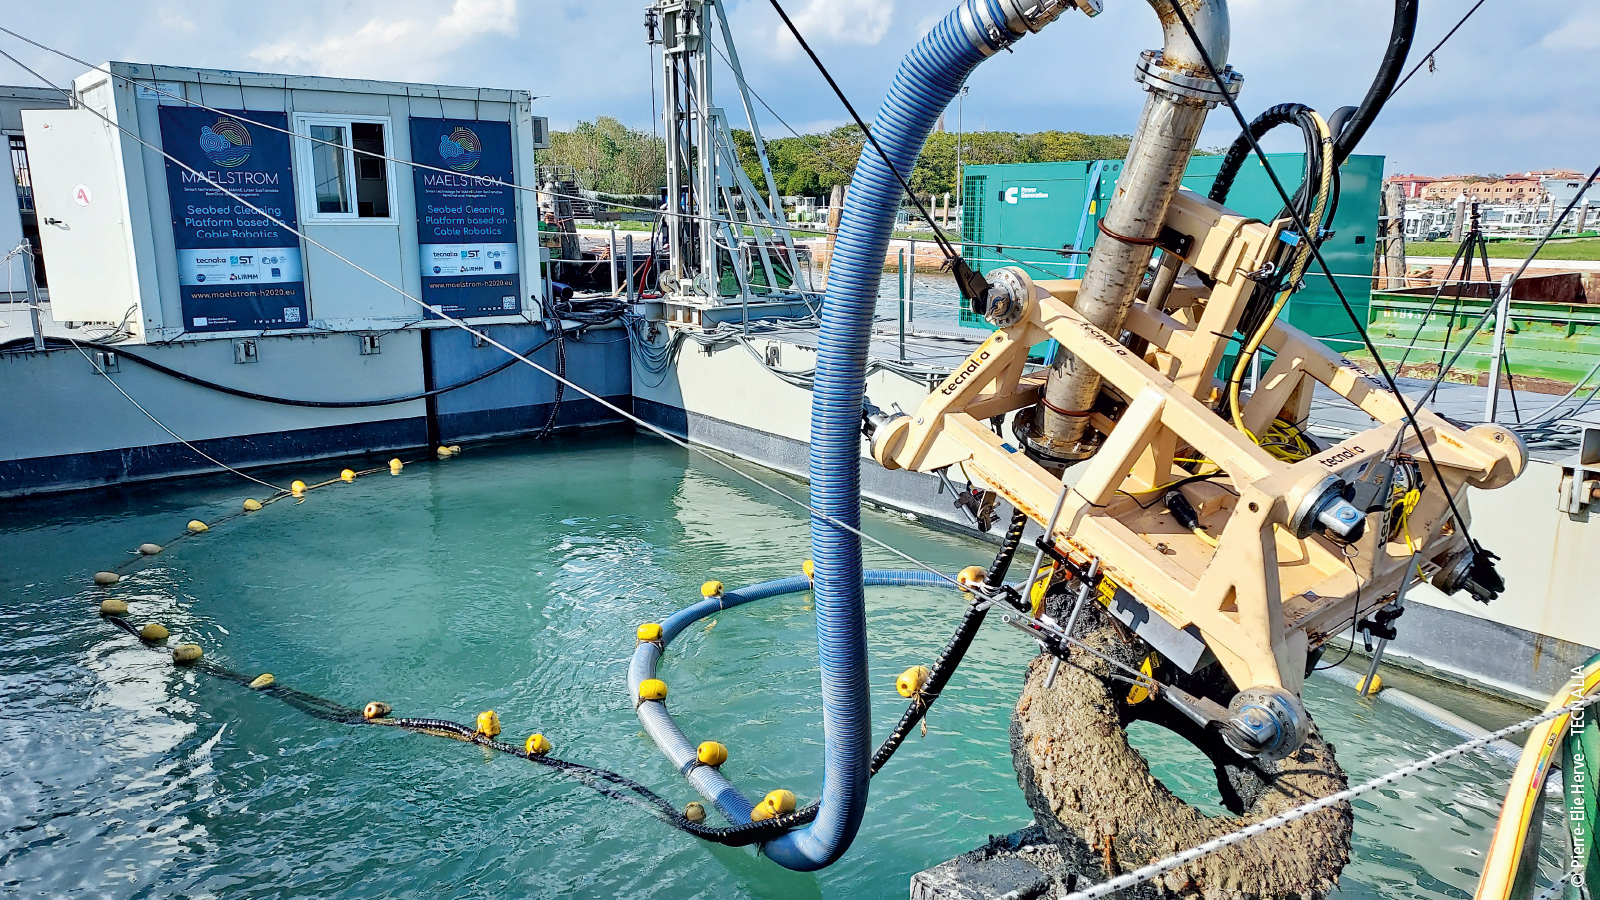 作为 MAELSTROM 研究项目的一部分，我们开发了一种缆索机器人，它可以通过抽吸装置清除小颗粒，并使用抓手从最深 20 米的水下回收重达 130 公斤的垃圾。